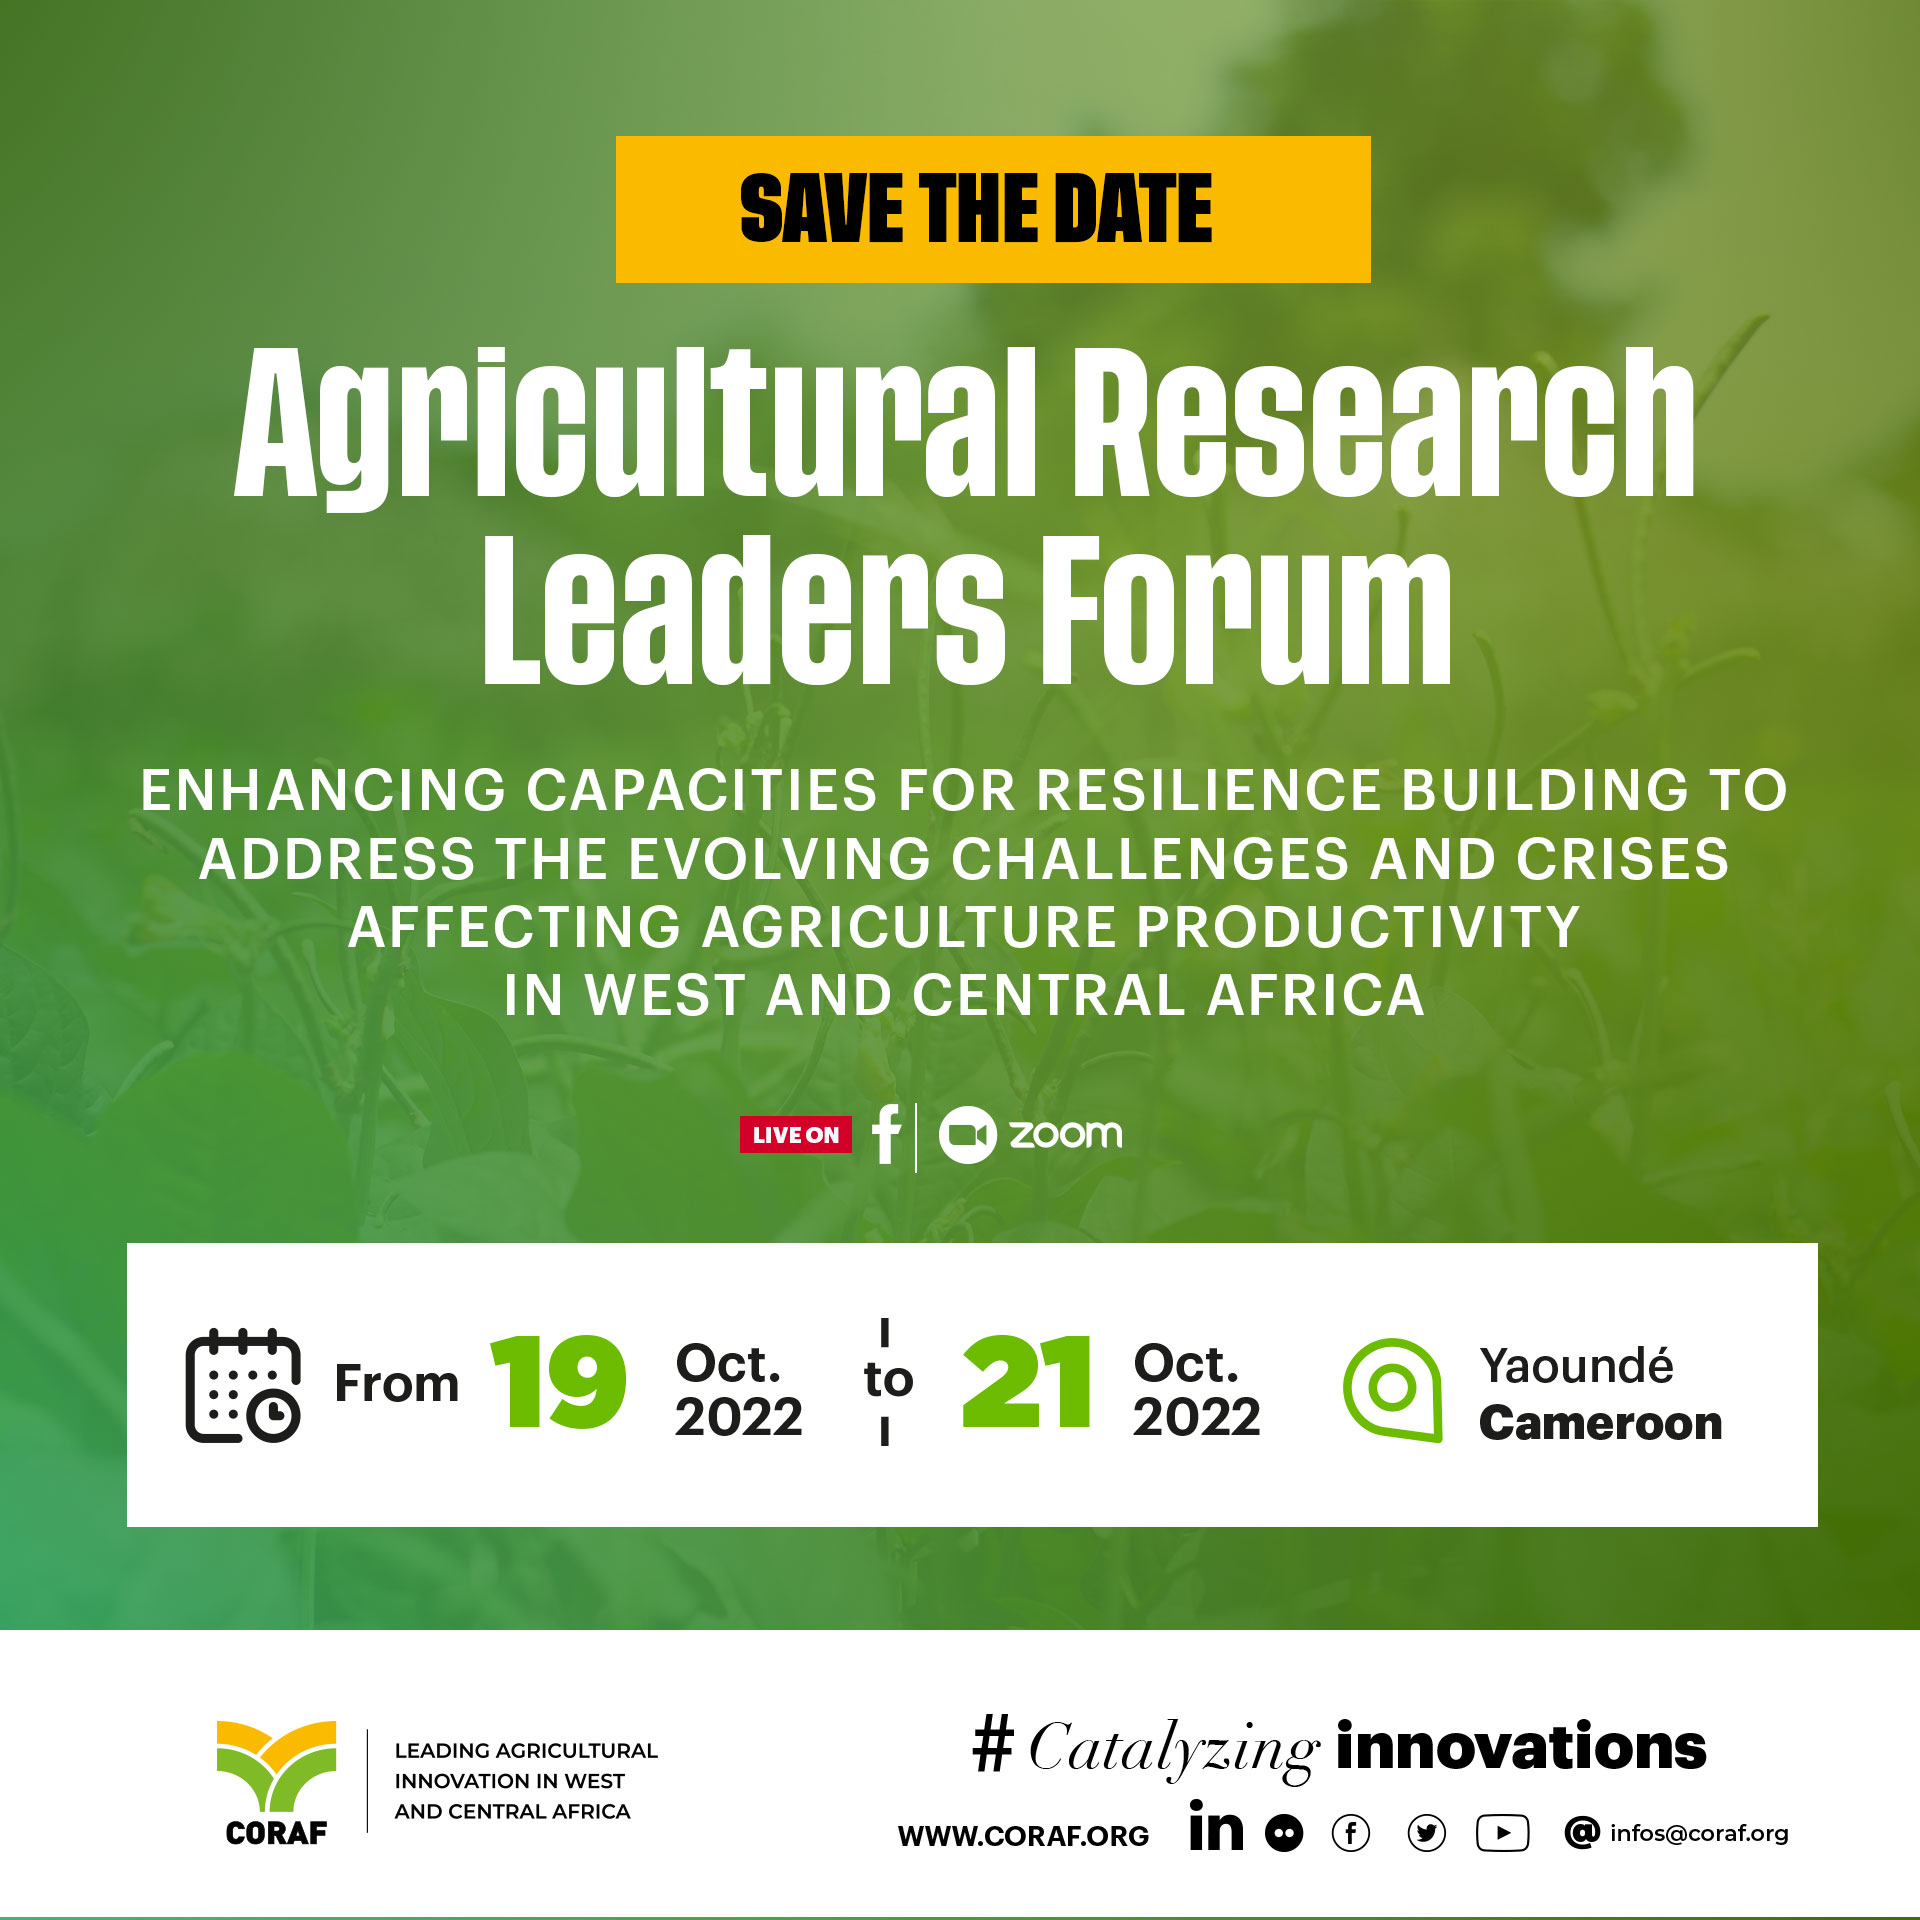 Forum des leaders de la recherche agricole de l’Afrique de l’Ouest et du Centre :  Ouverture de la première édition ce 19 octobre à Yaoundé au Cameroun